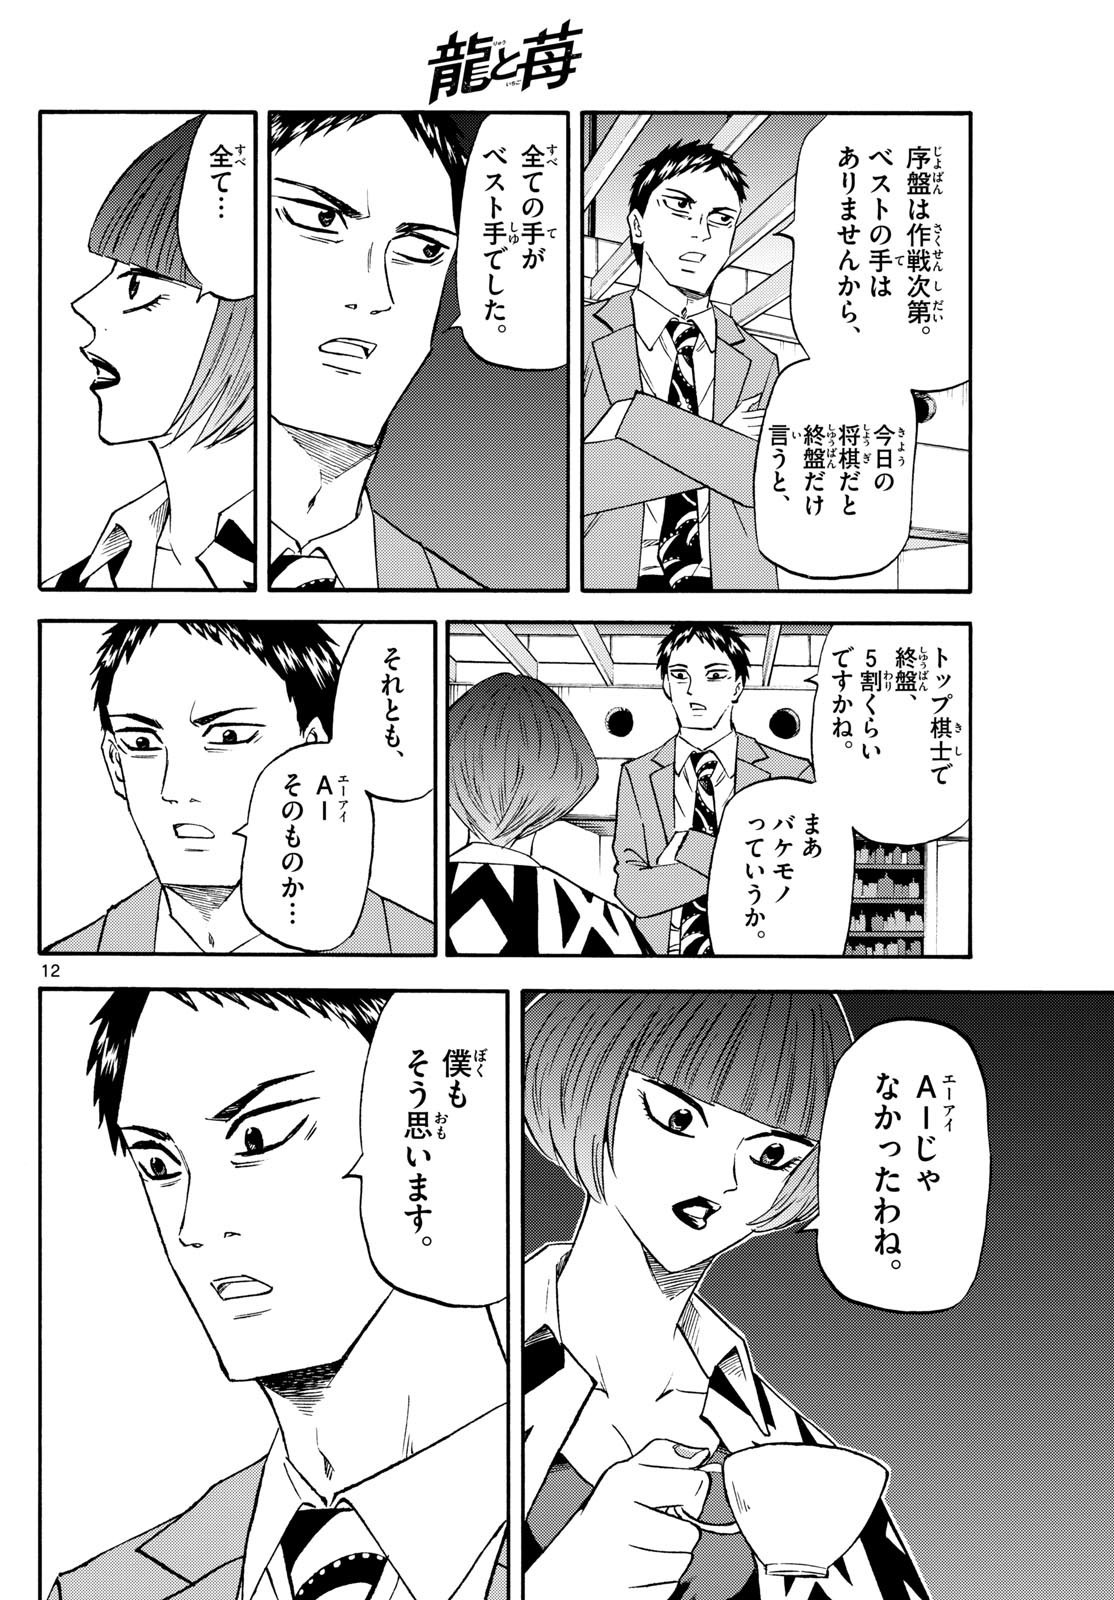 Ryu-to-Ichigo - Chapter 201 - Page 12